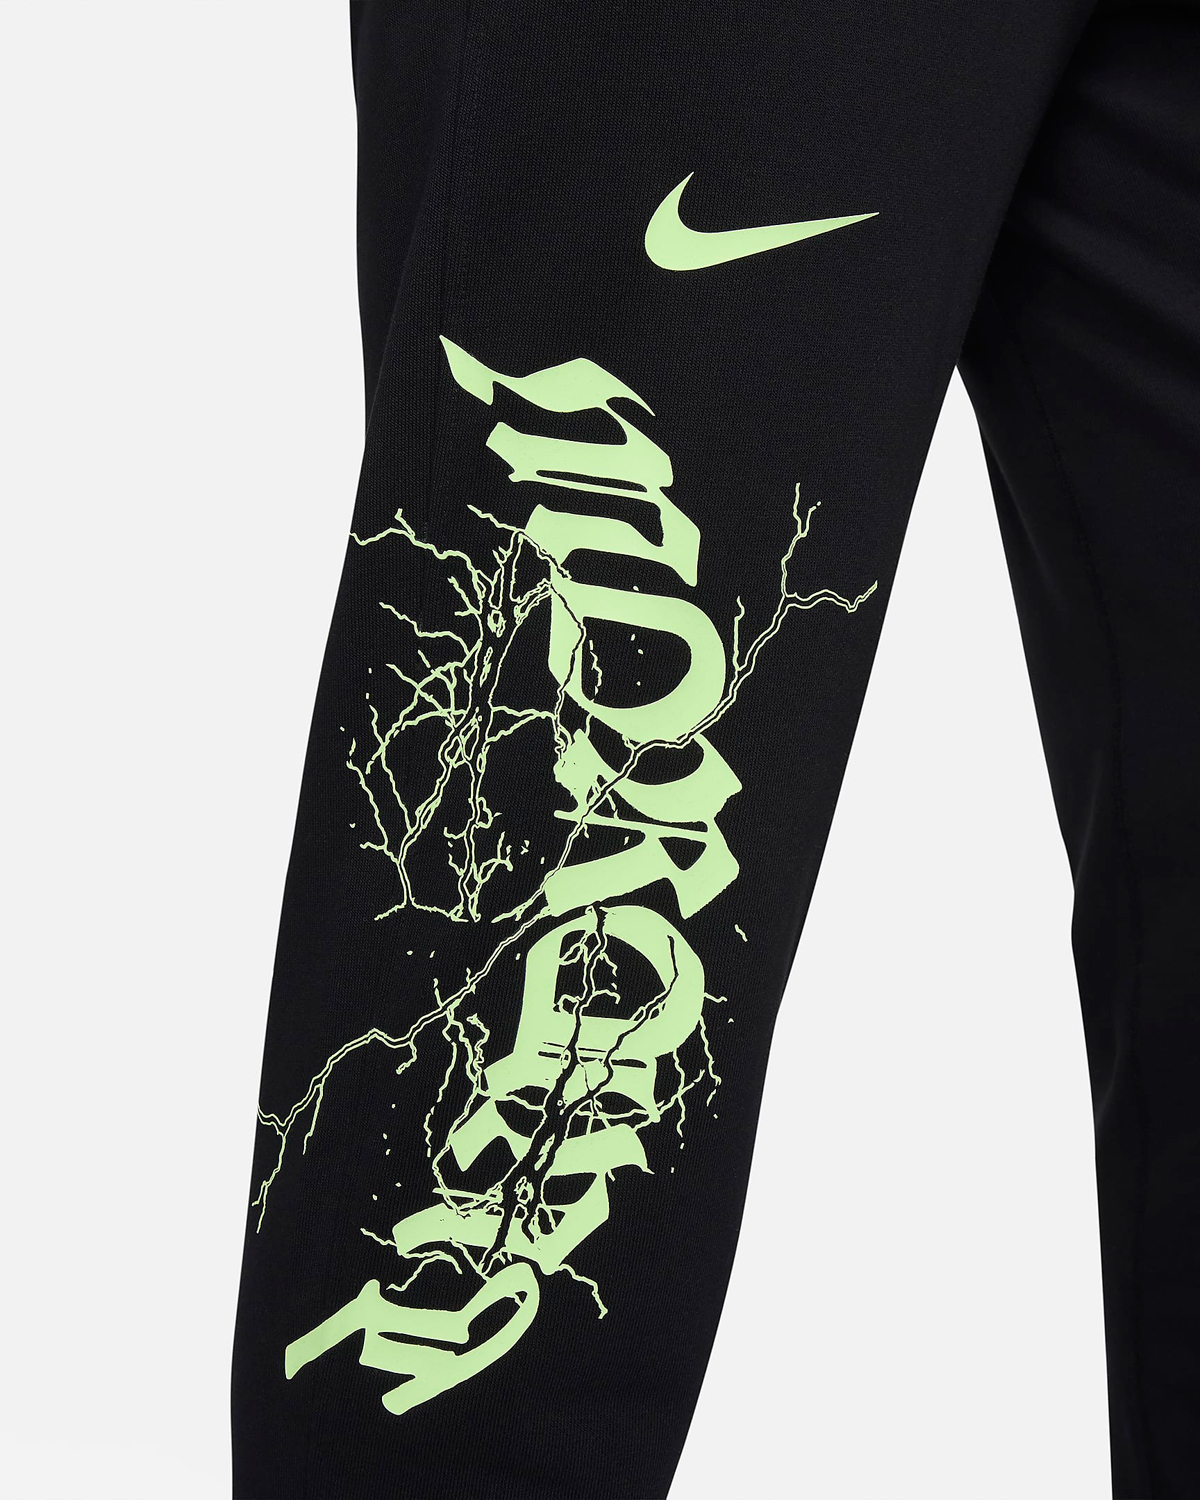 Nike Ja 1 Zombie Halloween Pants Black Lime 3